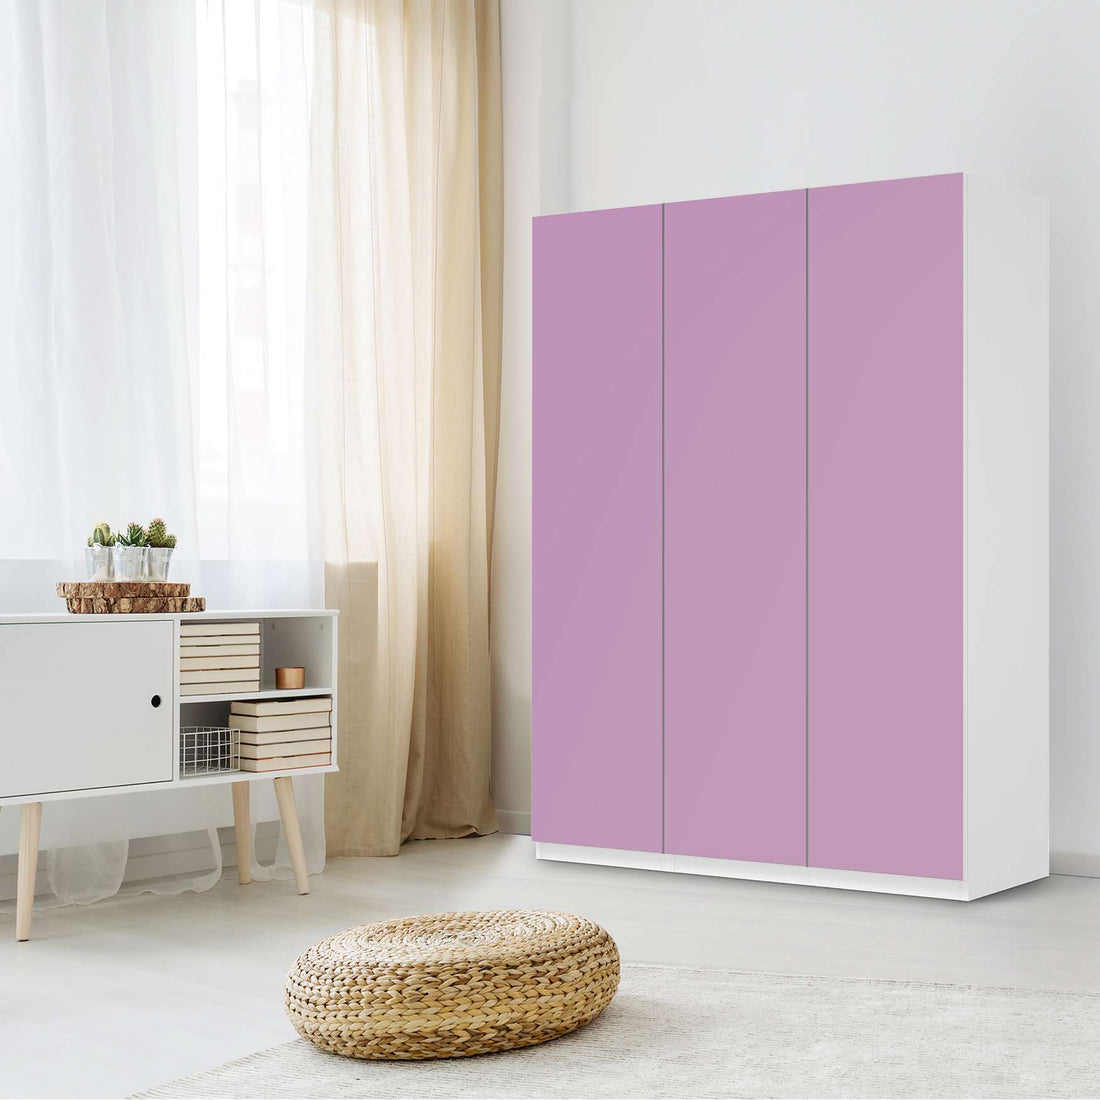 Folie für Möbel Flieder Light - IKEA Pax Schrank 201 cm Höhe - 3 Türen - Schlafzimmer